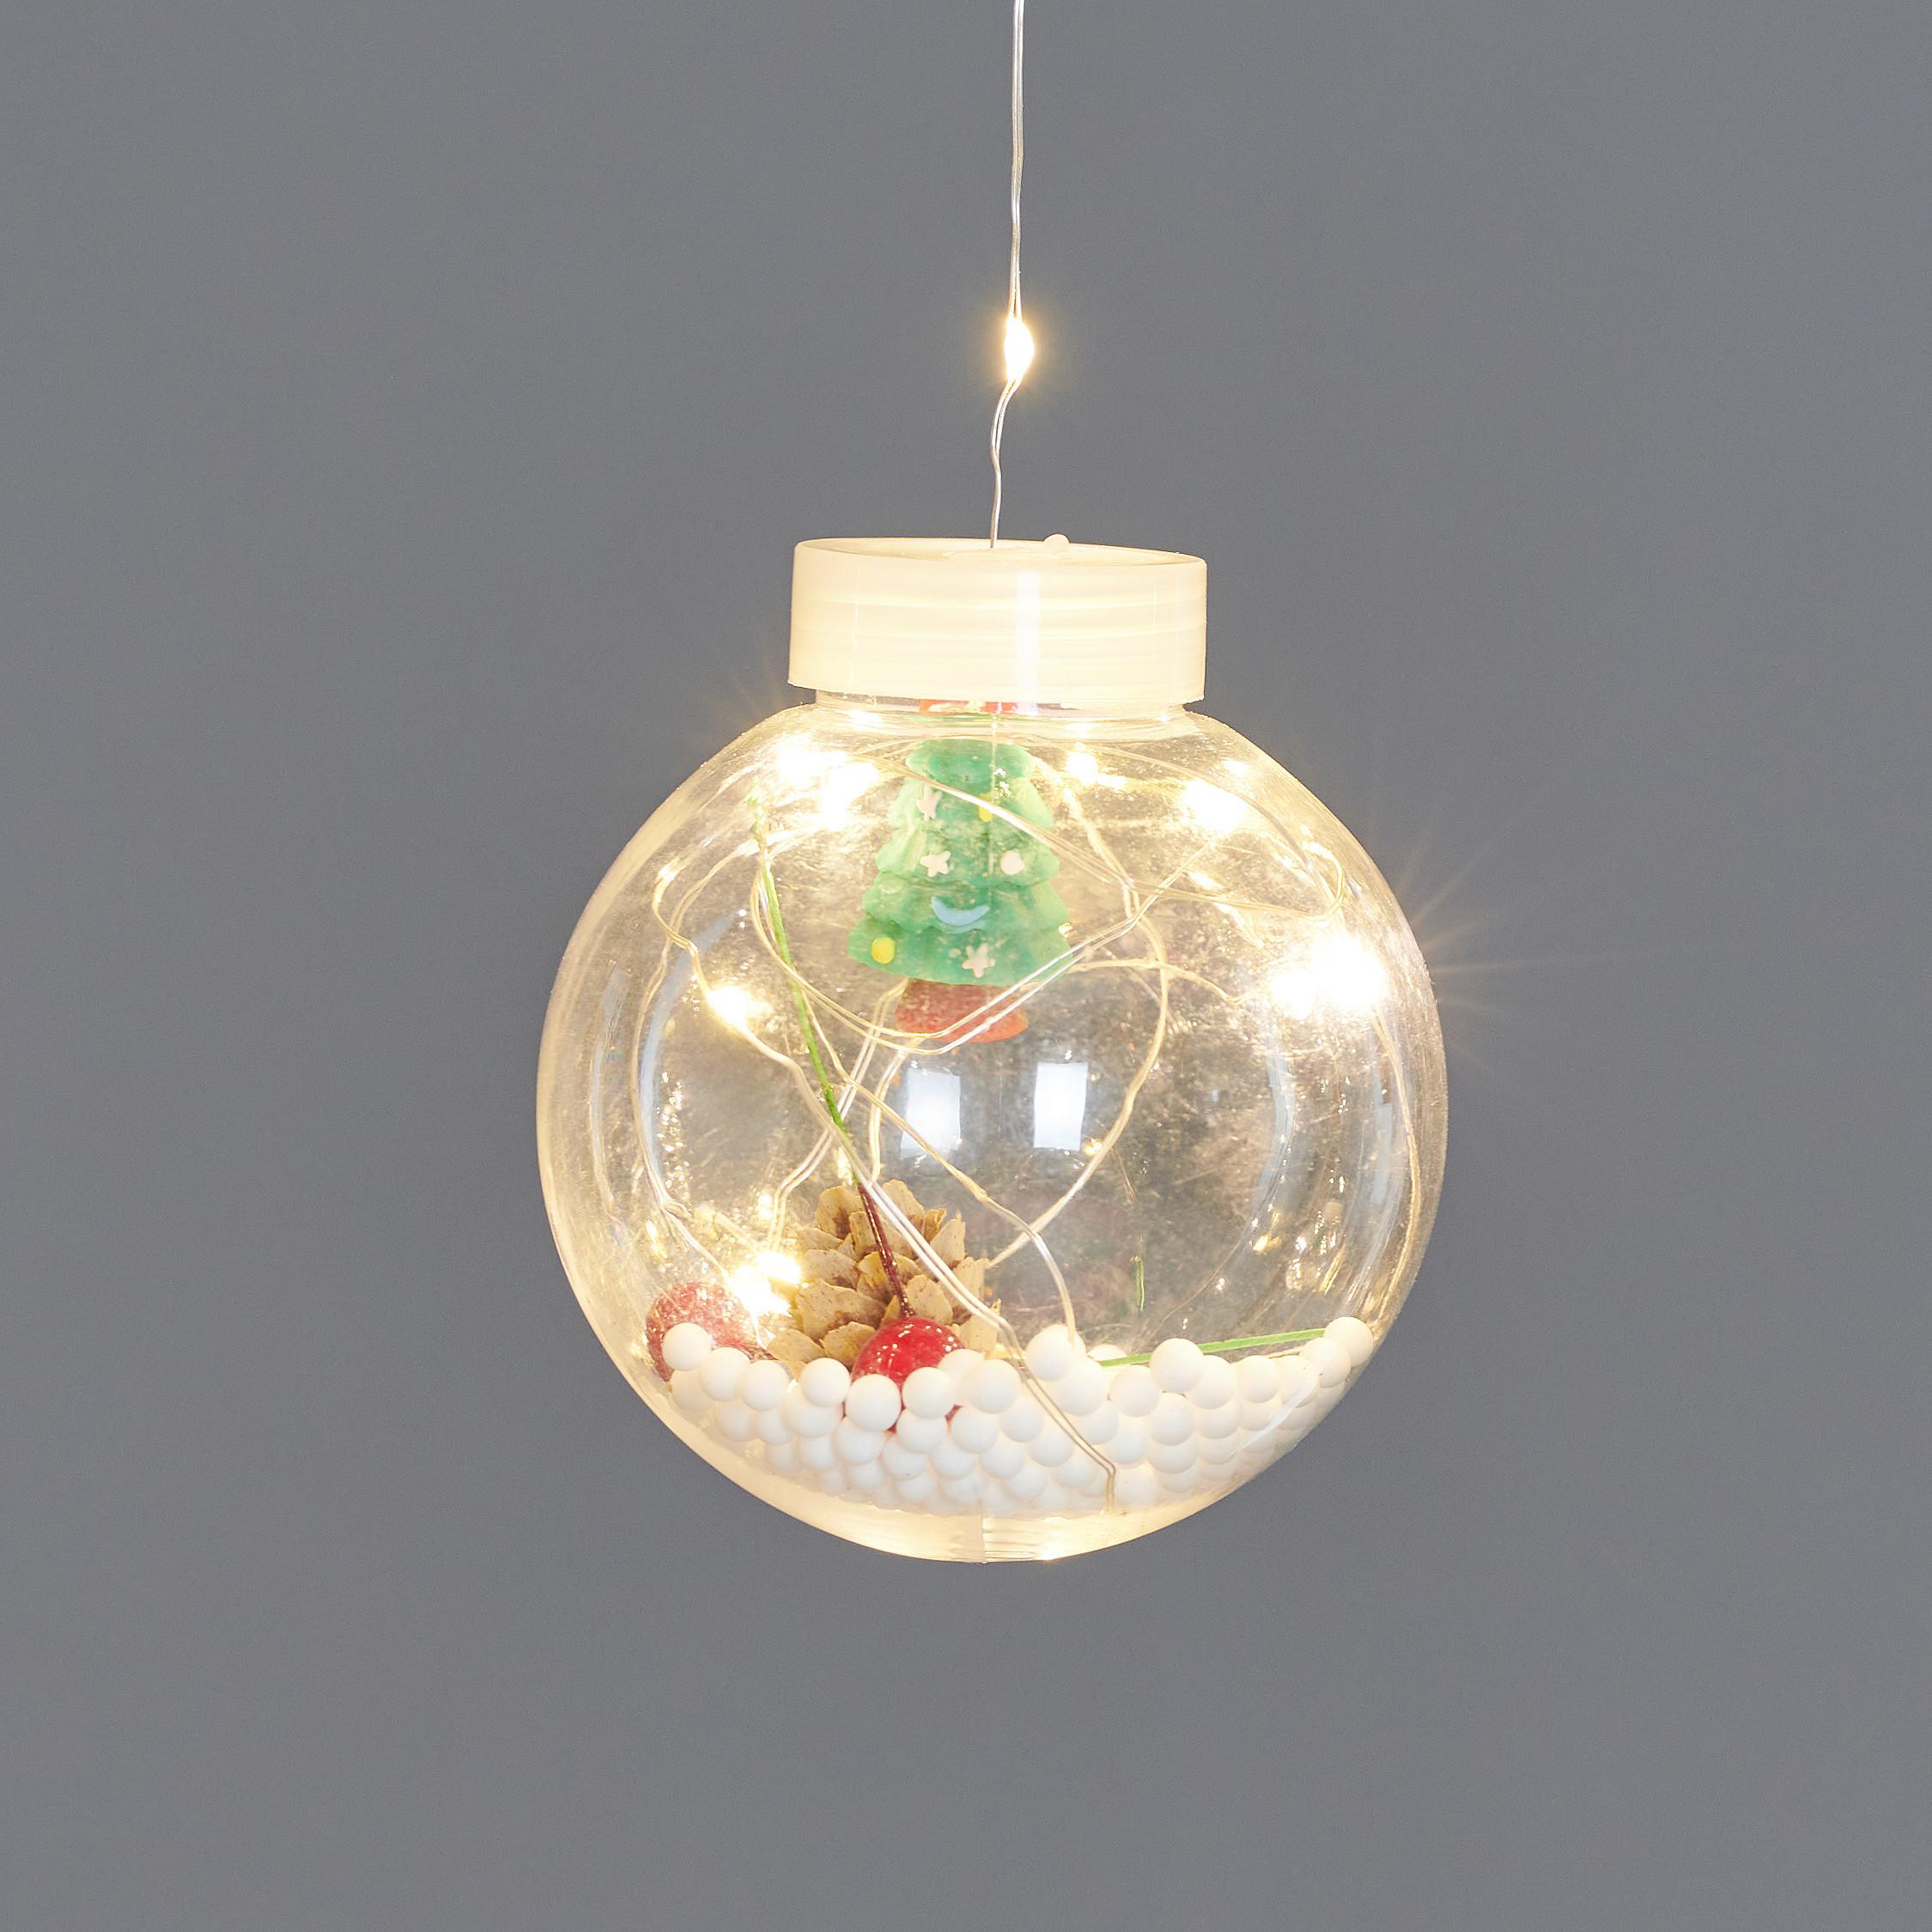 Vánoční Světelný Řetěz Zimo, 570cm - čiré/vícebarevná, Moderní, plast (570cm) - Premium Living